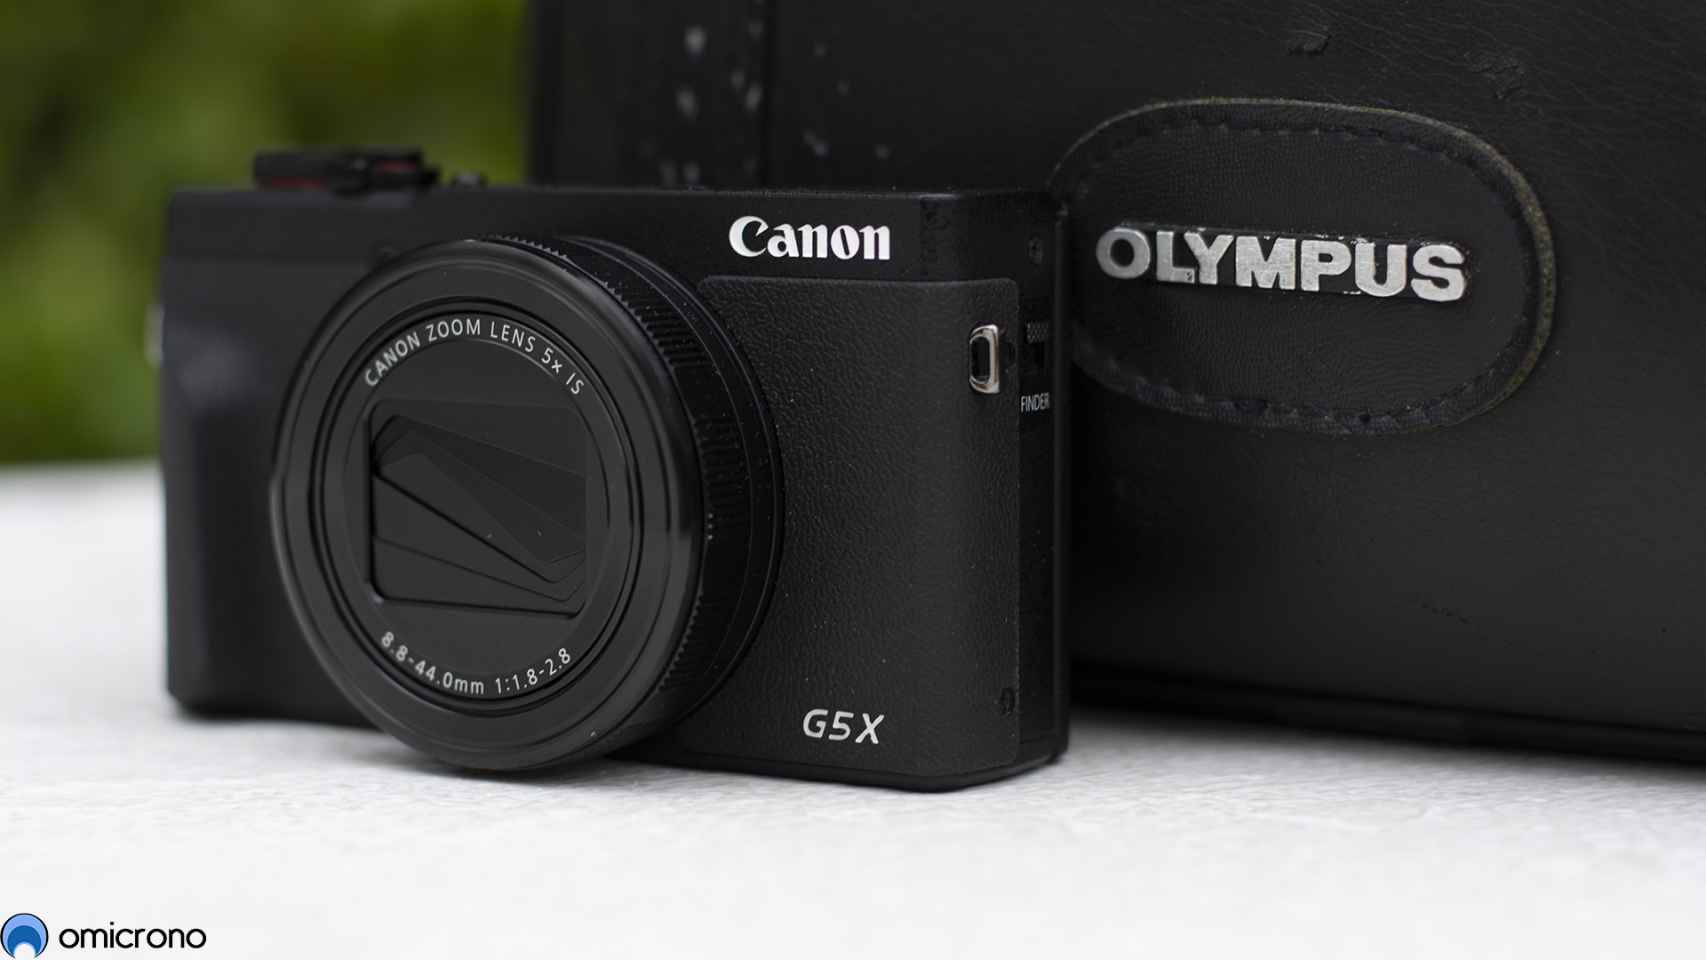 5 motivos para comprar una cámara compacta - fotofanaticos